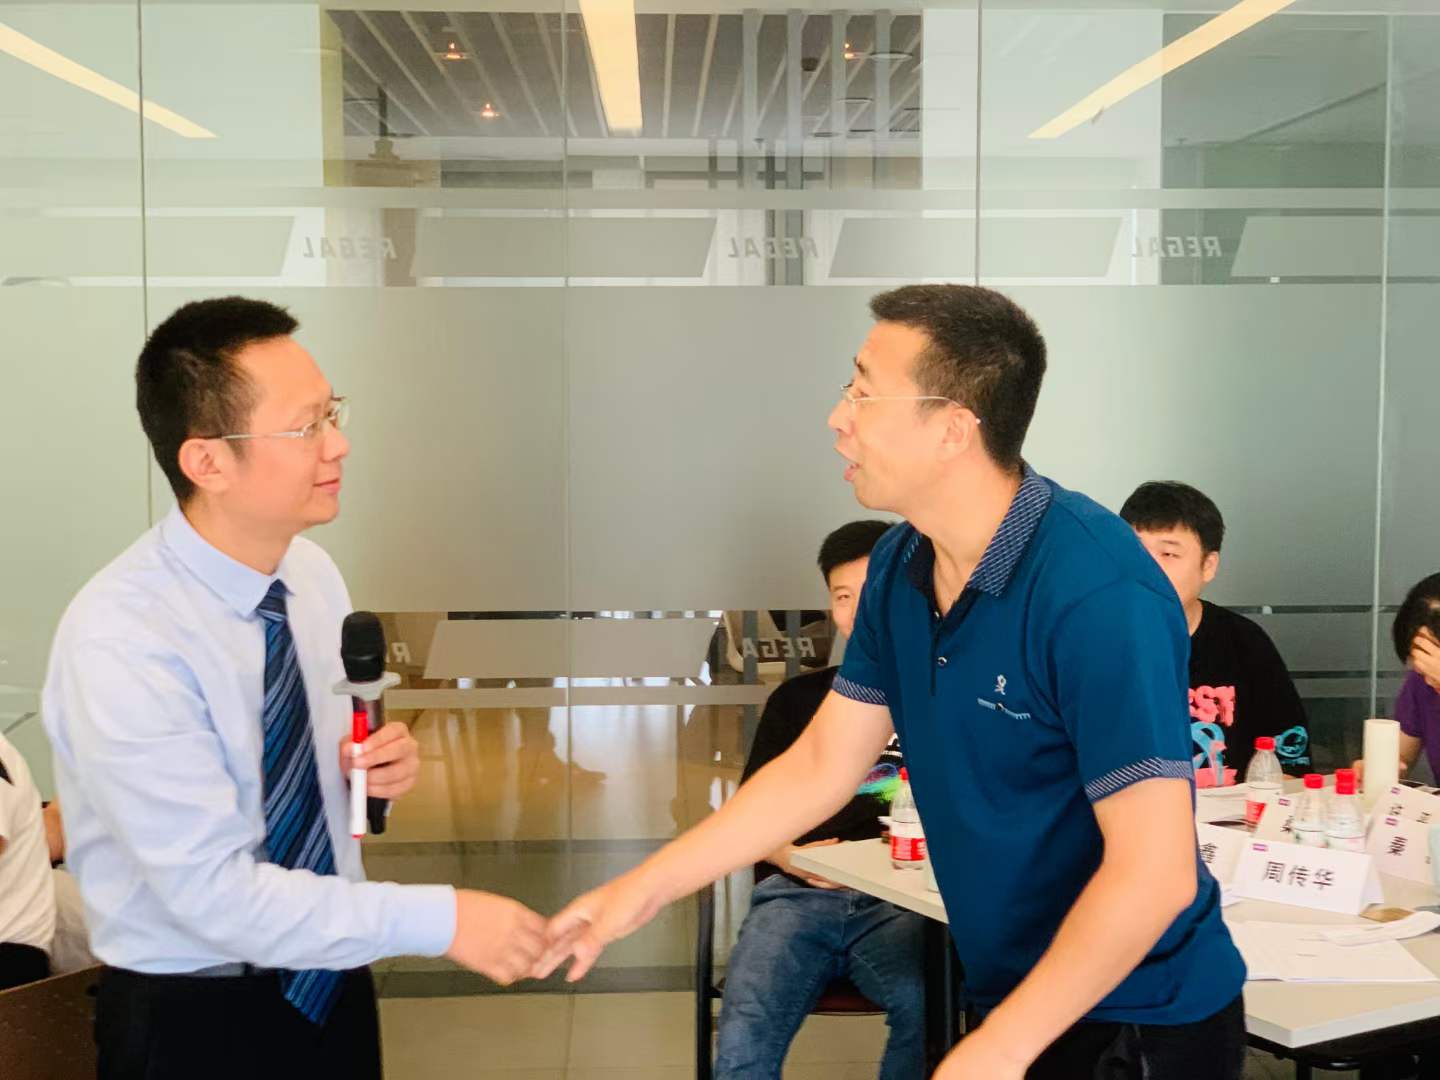 7月3日刘志翔老师给某电器公司授课《问题分析与解决》顺利结束，完美交付！！！